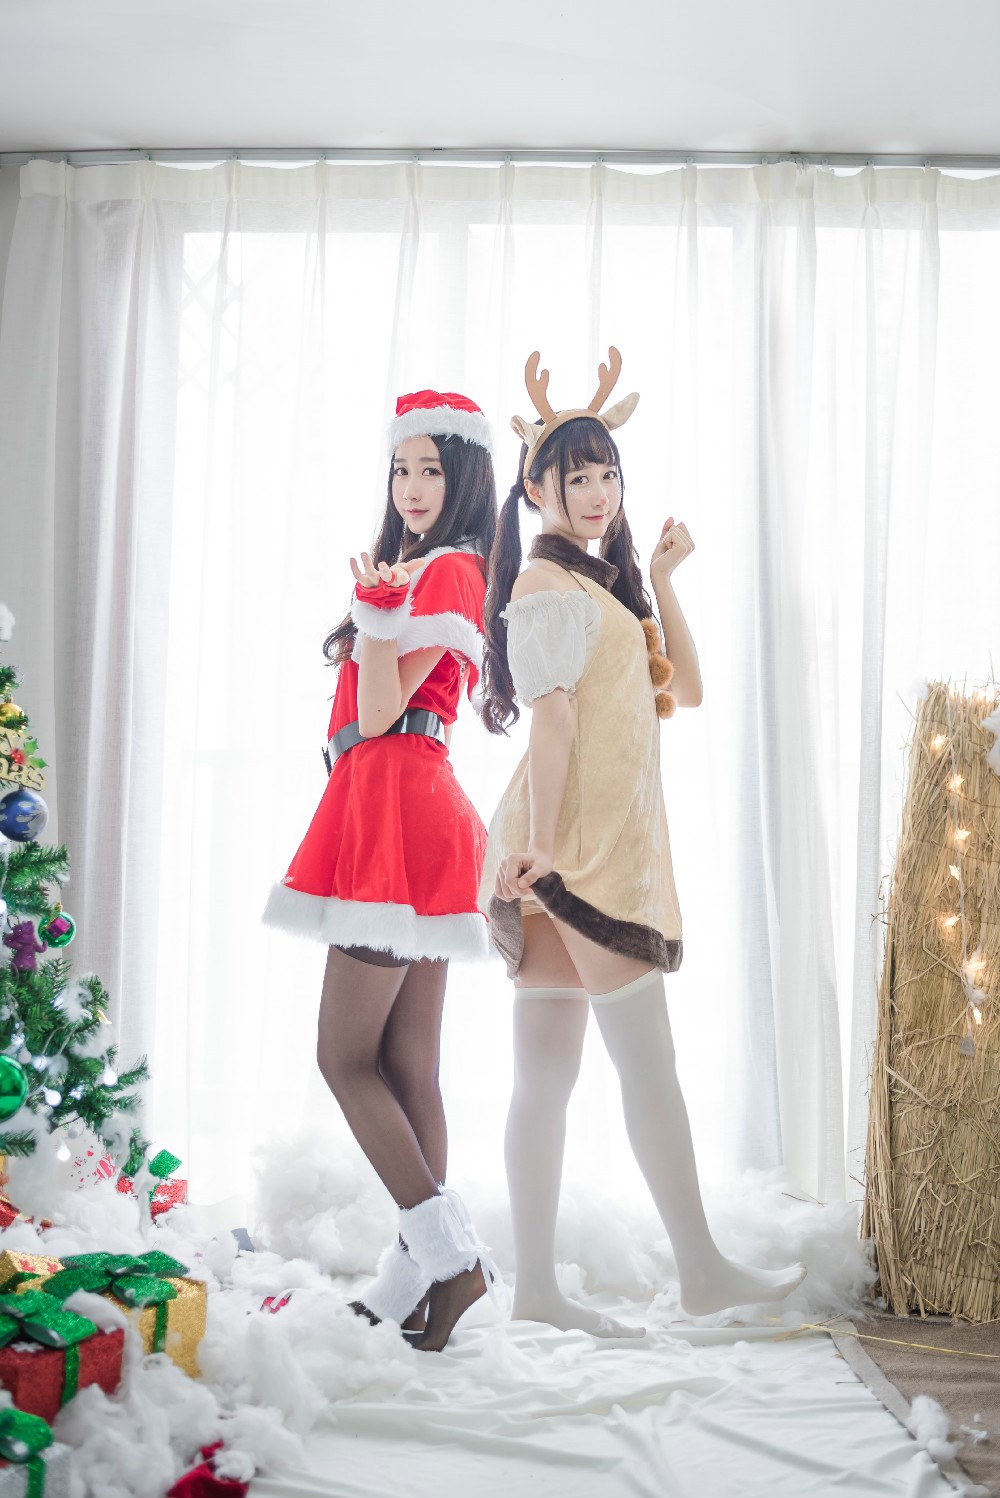 【兔玩映画】圣诞节的特别福利 兔玩映画 第20张